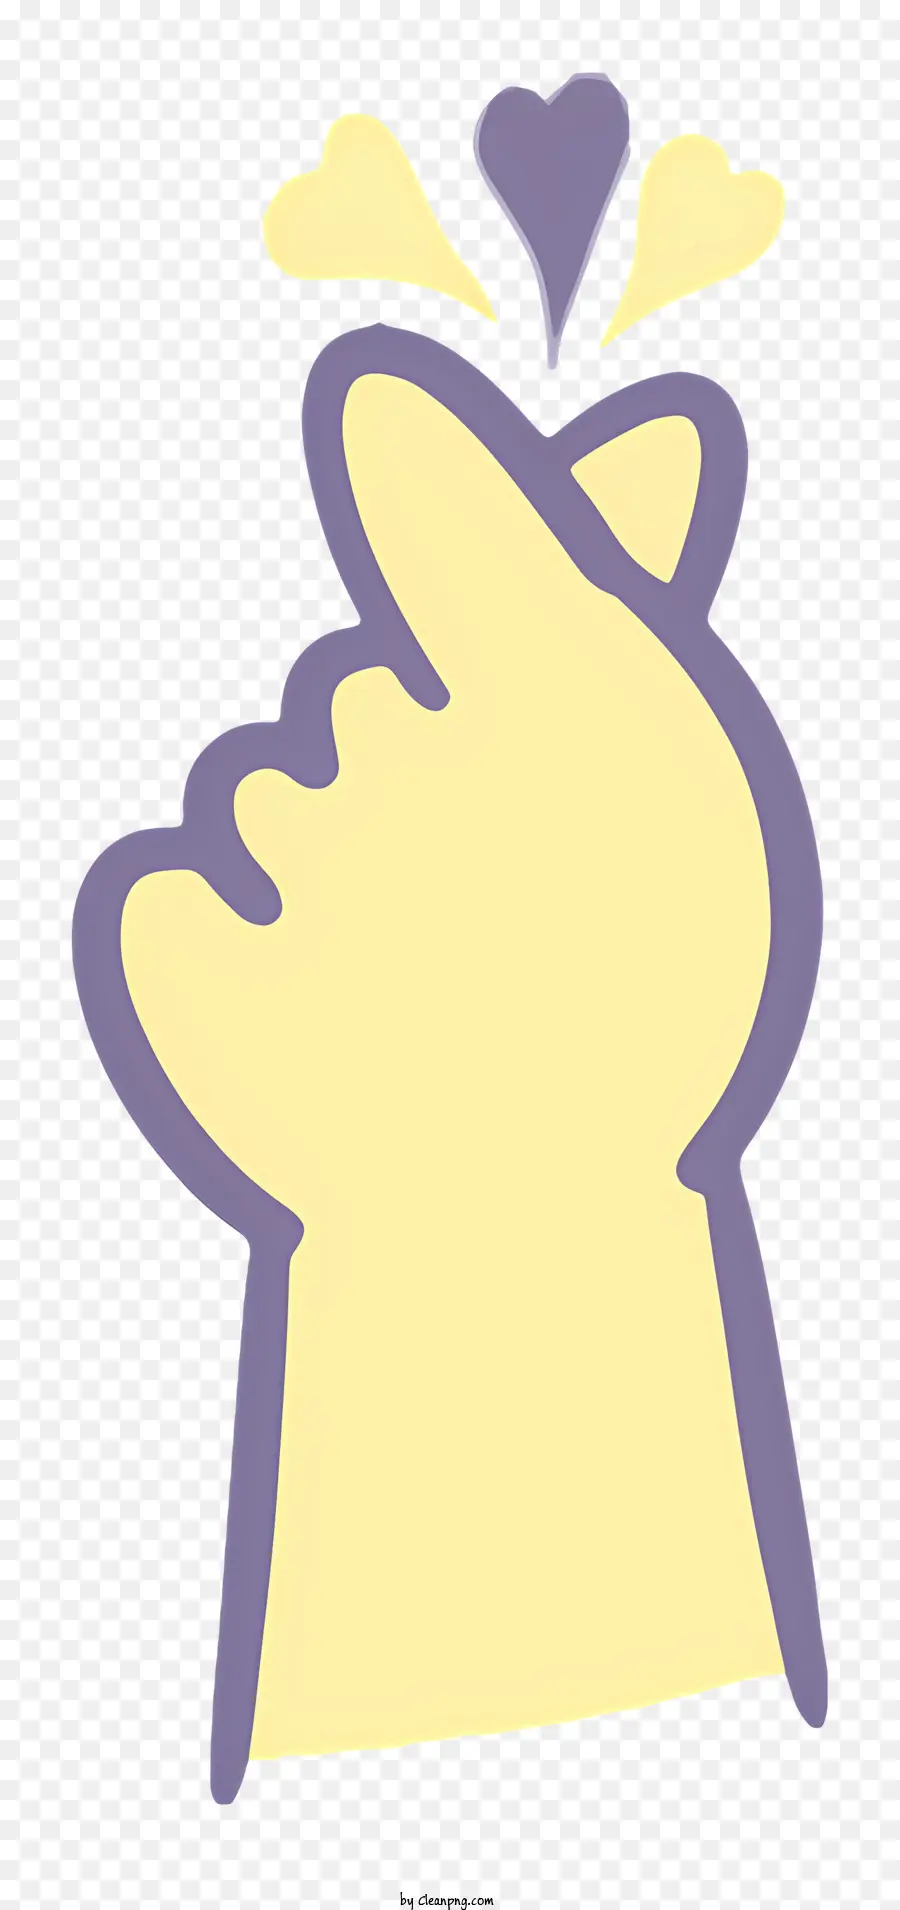 Herz symbol - Nahaufnahme Bild eines Herzsymbol Hands